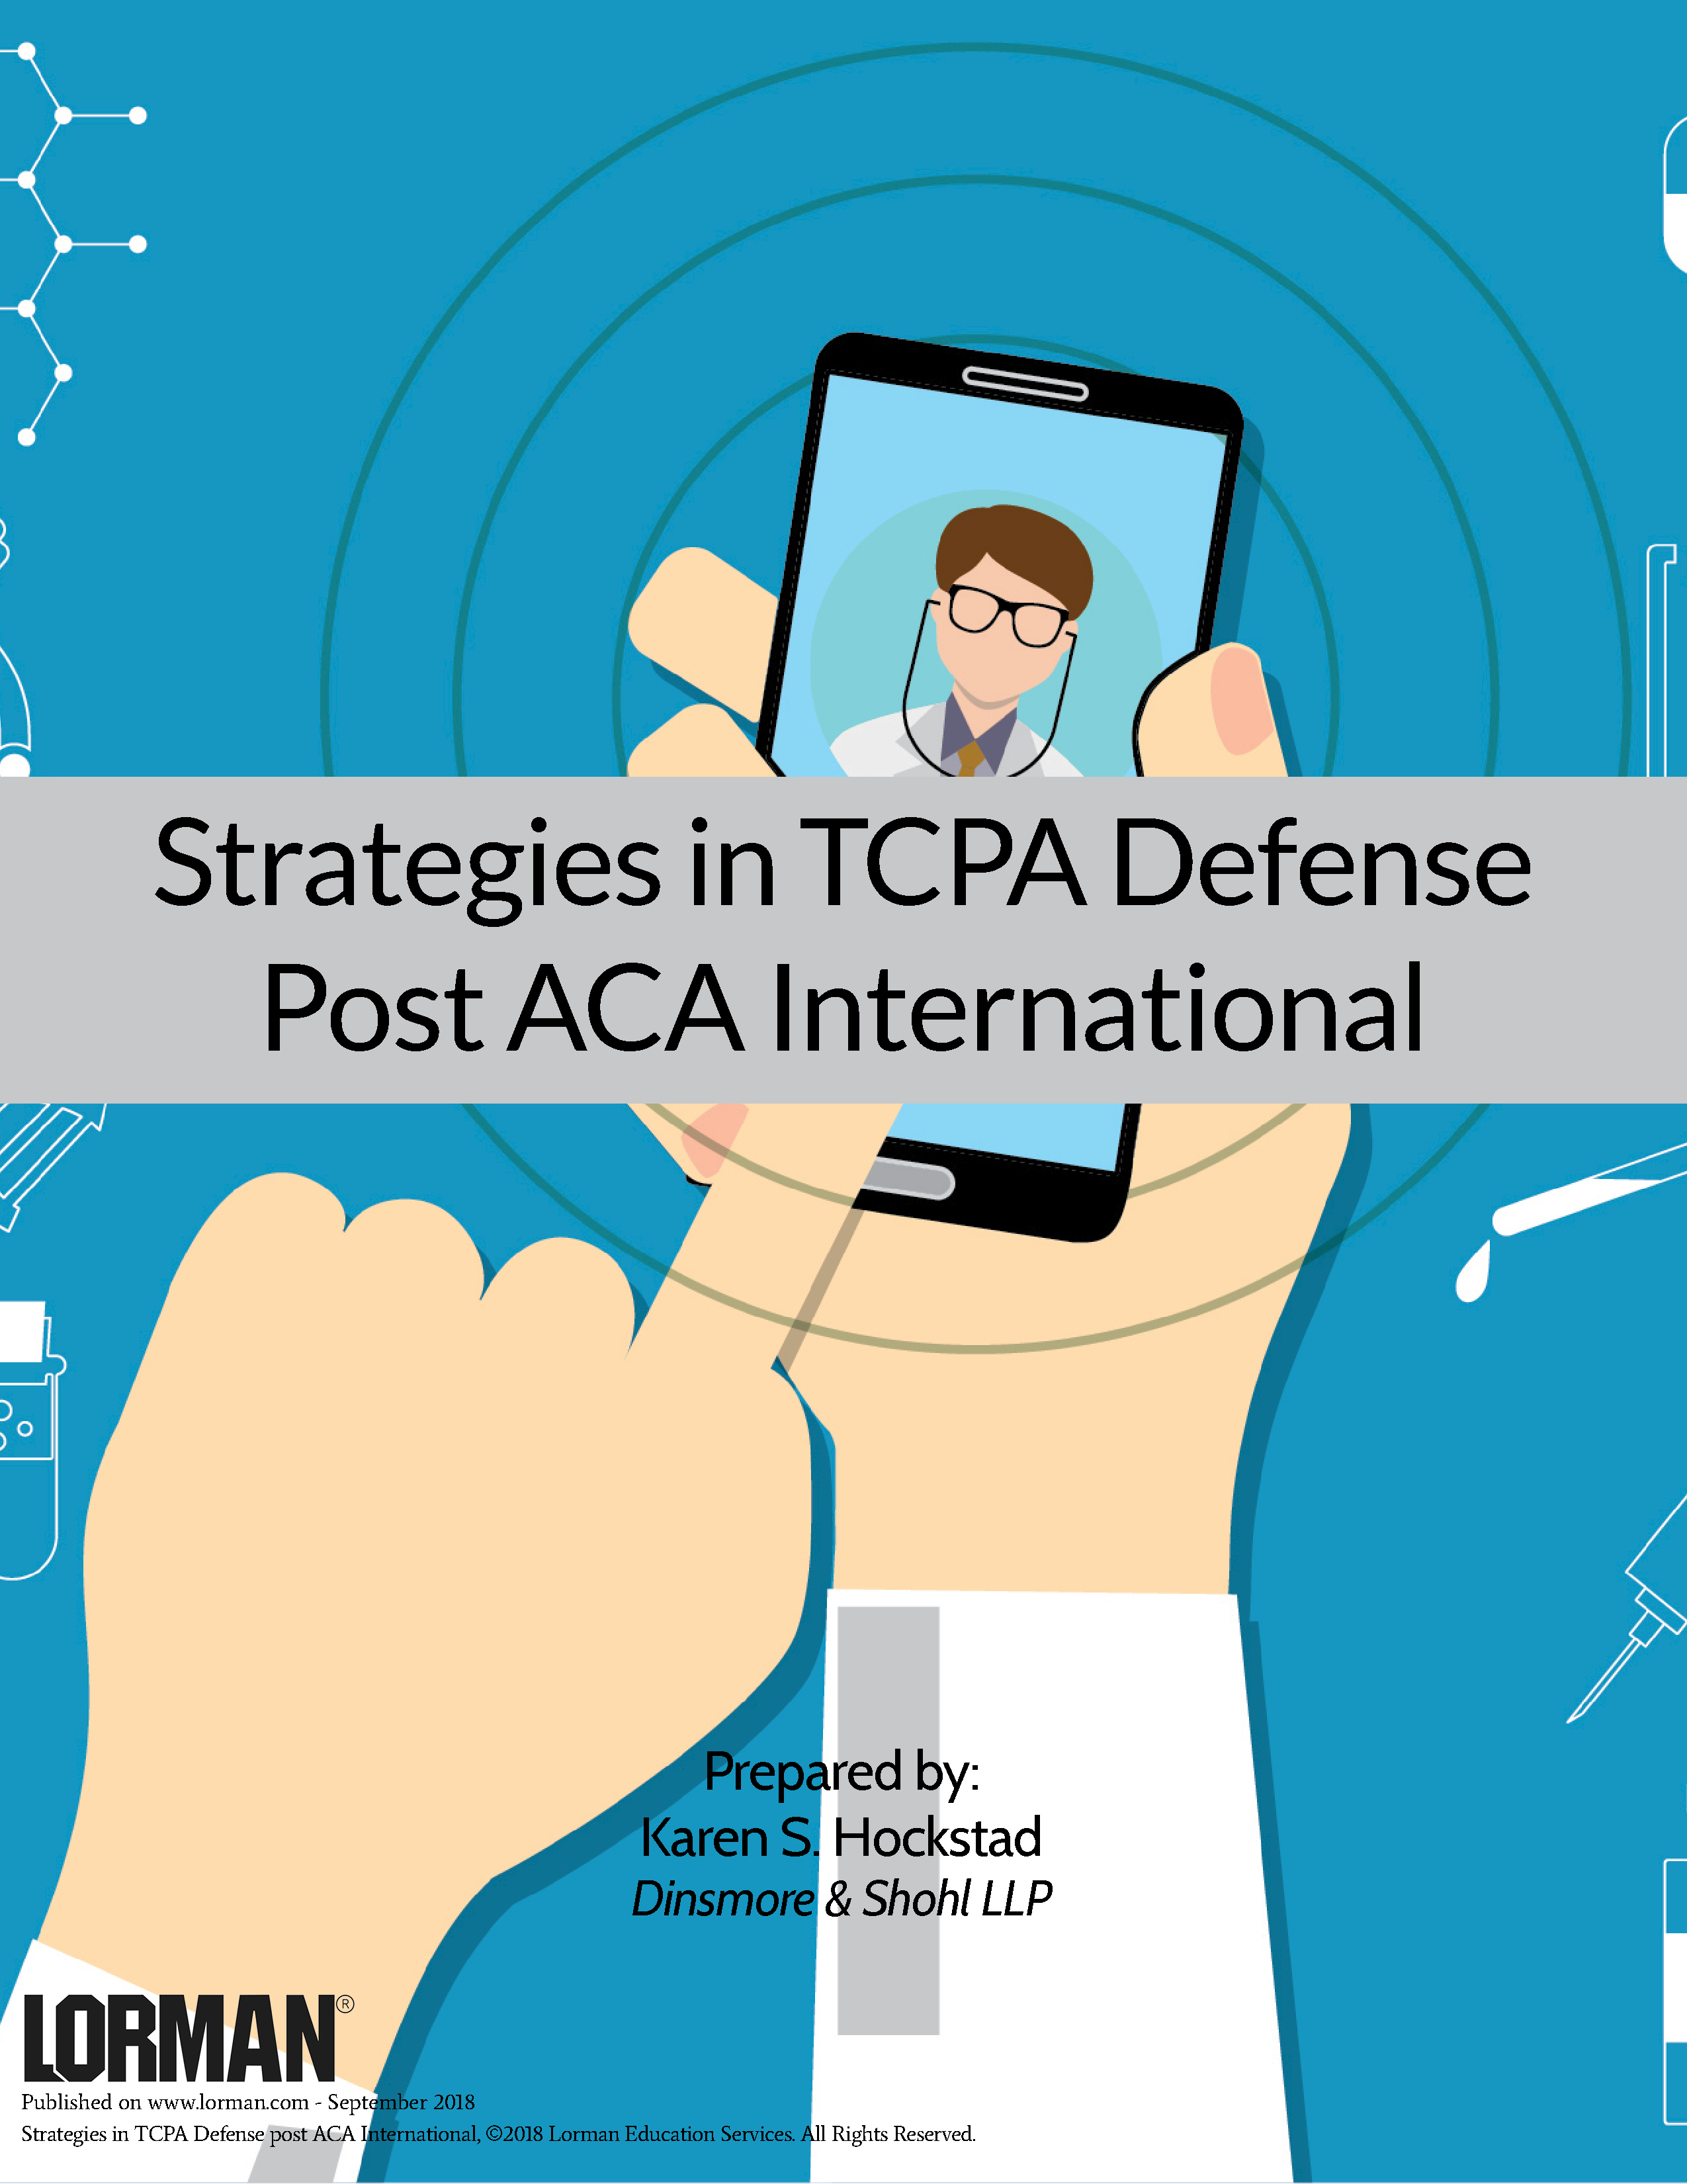 Strategies in TCPA Defense Post ACA International